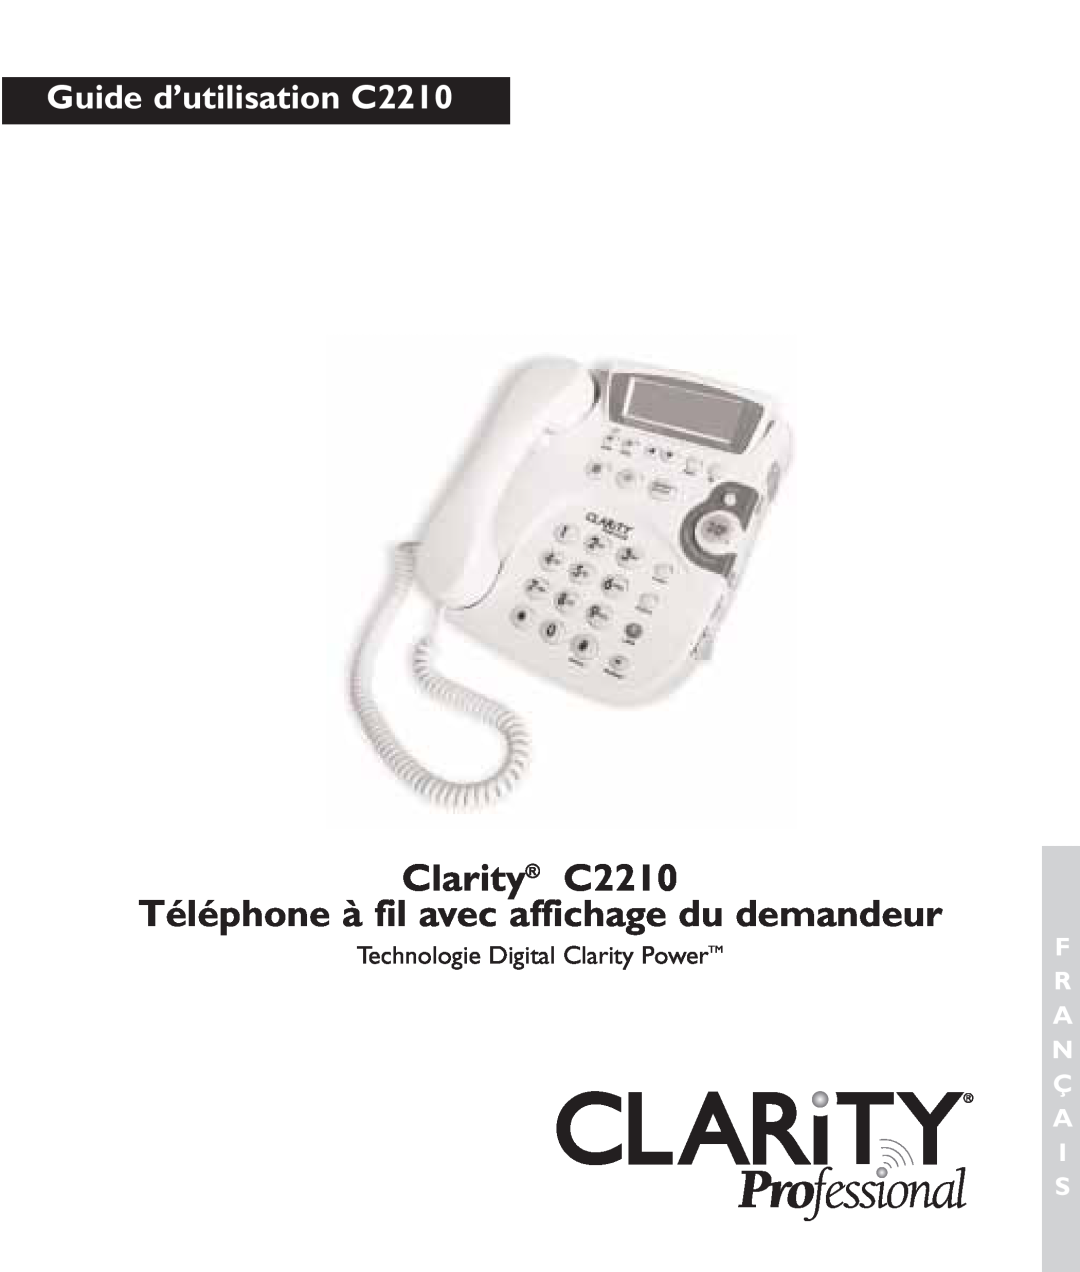 Clarity c2210 manual Clarity C2210 Téléphone à fil avec affichage du demandeur, Technologie Digital Clarity Power 